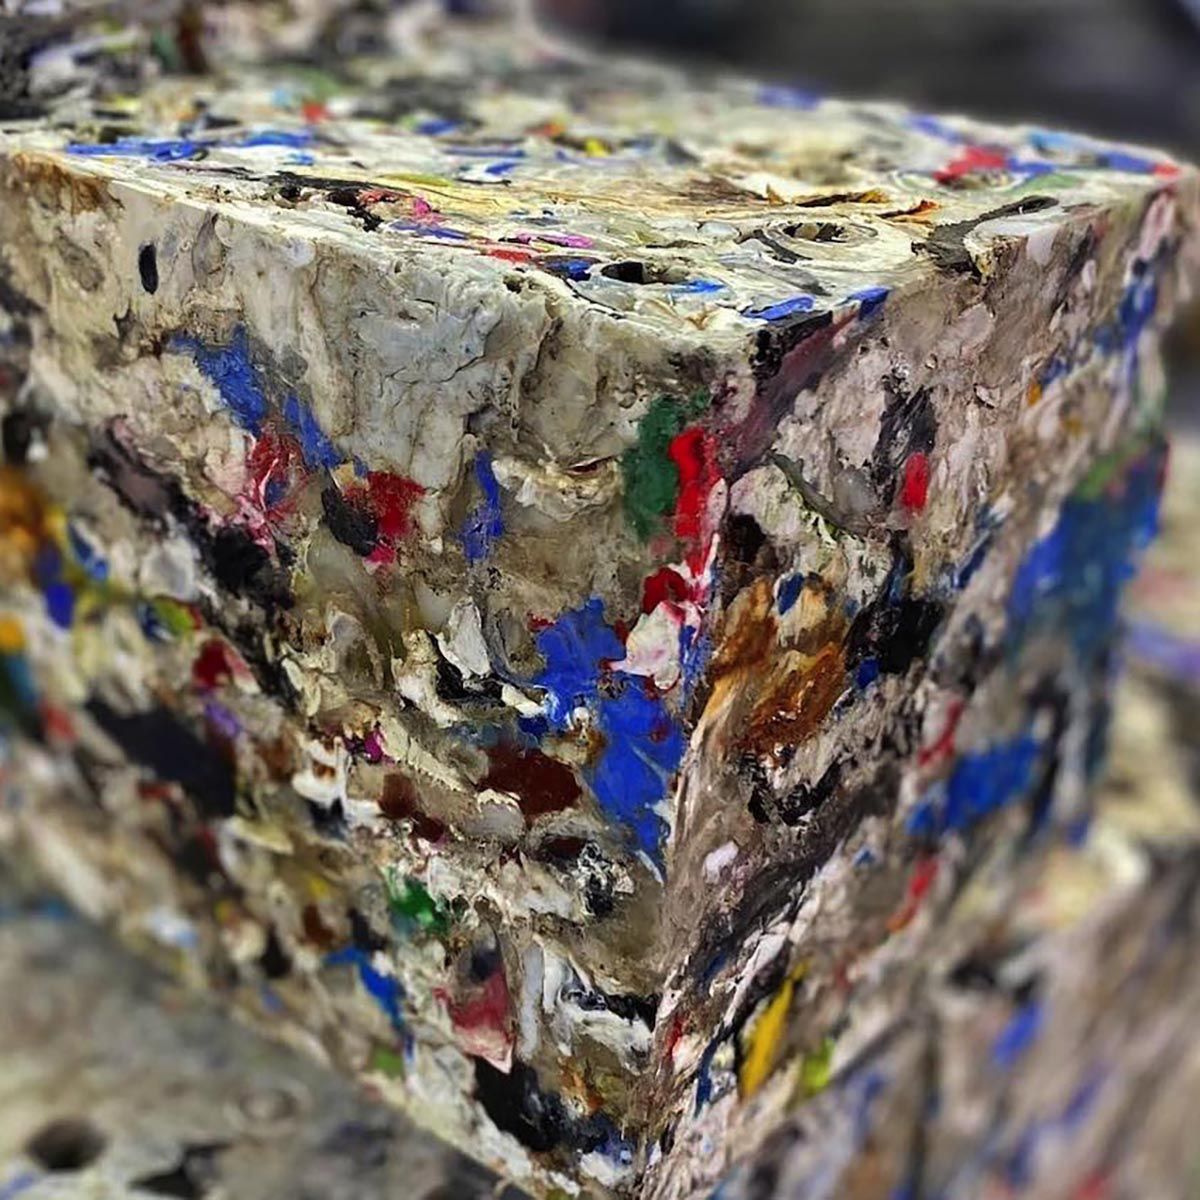 Materiales reciclables como el ladrillo de plástico